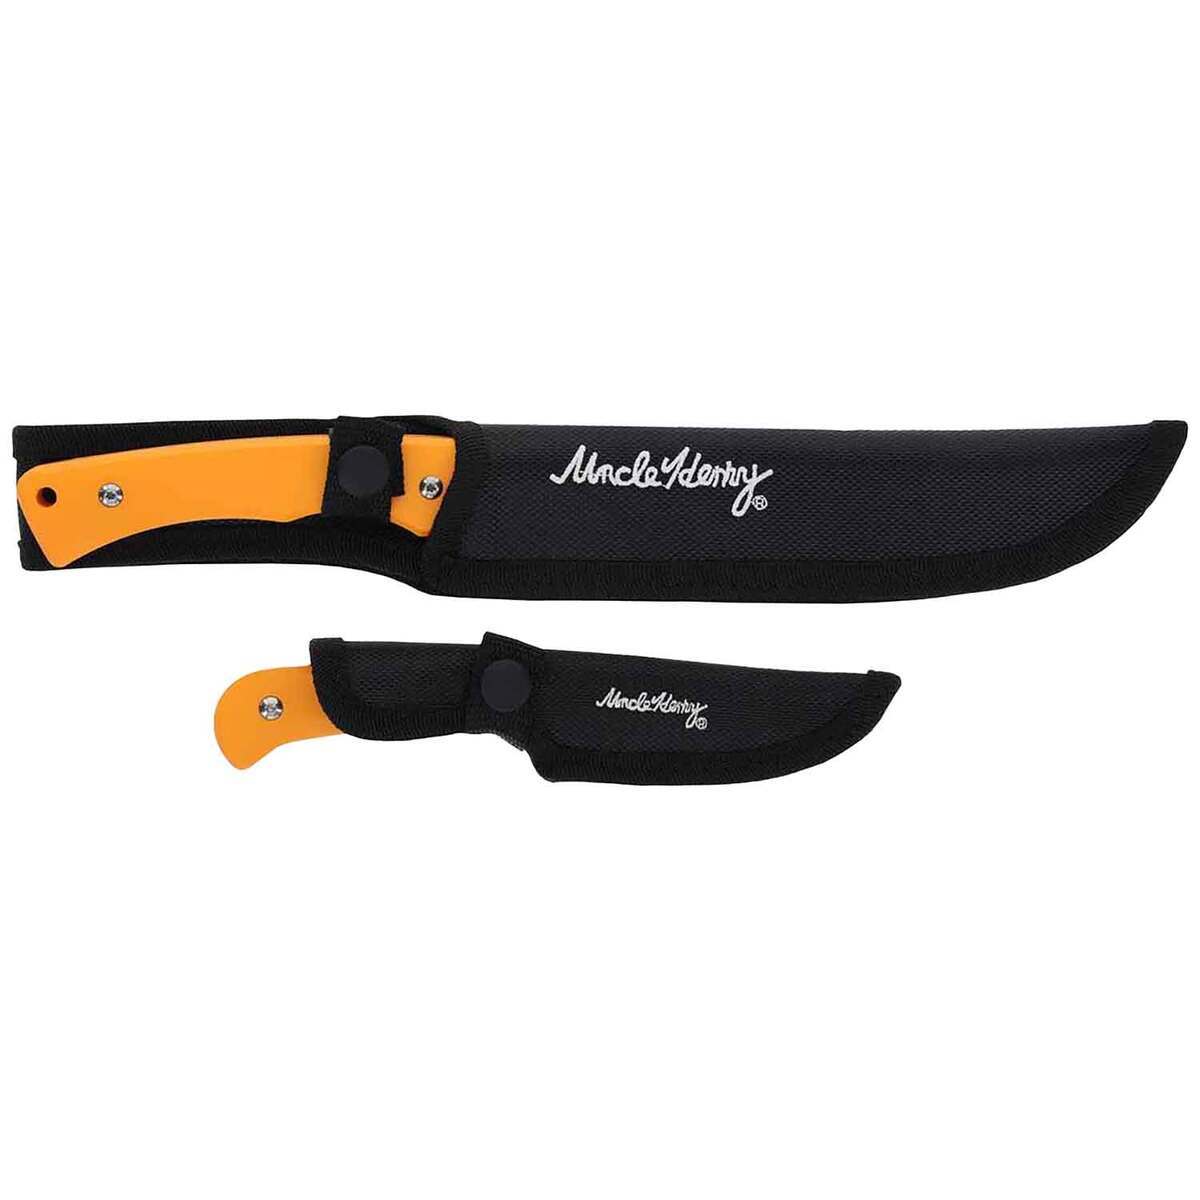 https://www.knives.com/medias/uncle-henry-2-piece-bowieskinnerfire-starter-knife-set-orange-1740216-1.jpg?context=bWFzdGVyfGltYWdlc3w0NjA0MHxpbWFnZS9qcGVnfGhjNS9oYjgvMTA3ODMzMDYyMTk1NTAvMTc0MDIxNi0xX2Jhc2UtY29udmVyc2lvbkZvcm1hdF8xMjAwLWNvbnZlcnNpb25Gb3JtYXR8ZWM0MGFlYjc0M2YwZWQ0ZDY2NDNlMTliMDM1ODNjZjQ5ZmQzMjU1ZDc5MDRiZjZiNzQ4MTNjM2I3ODk5Mzg0Mg